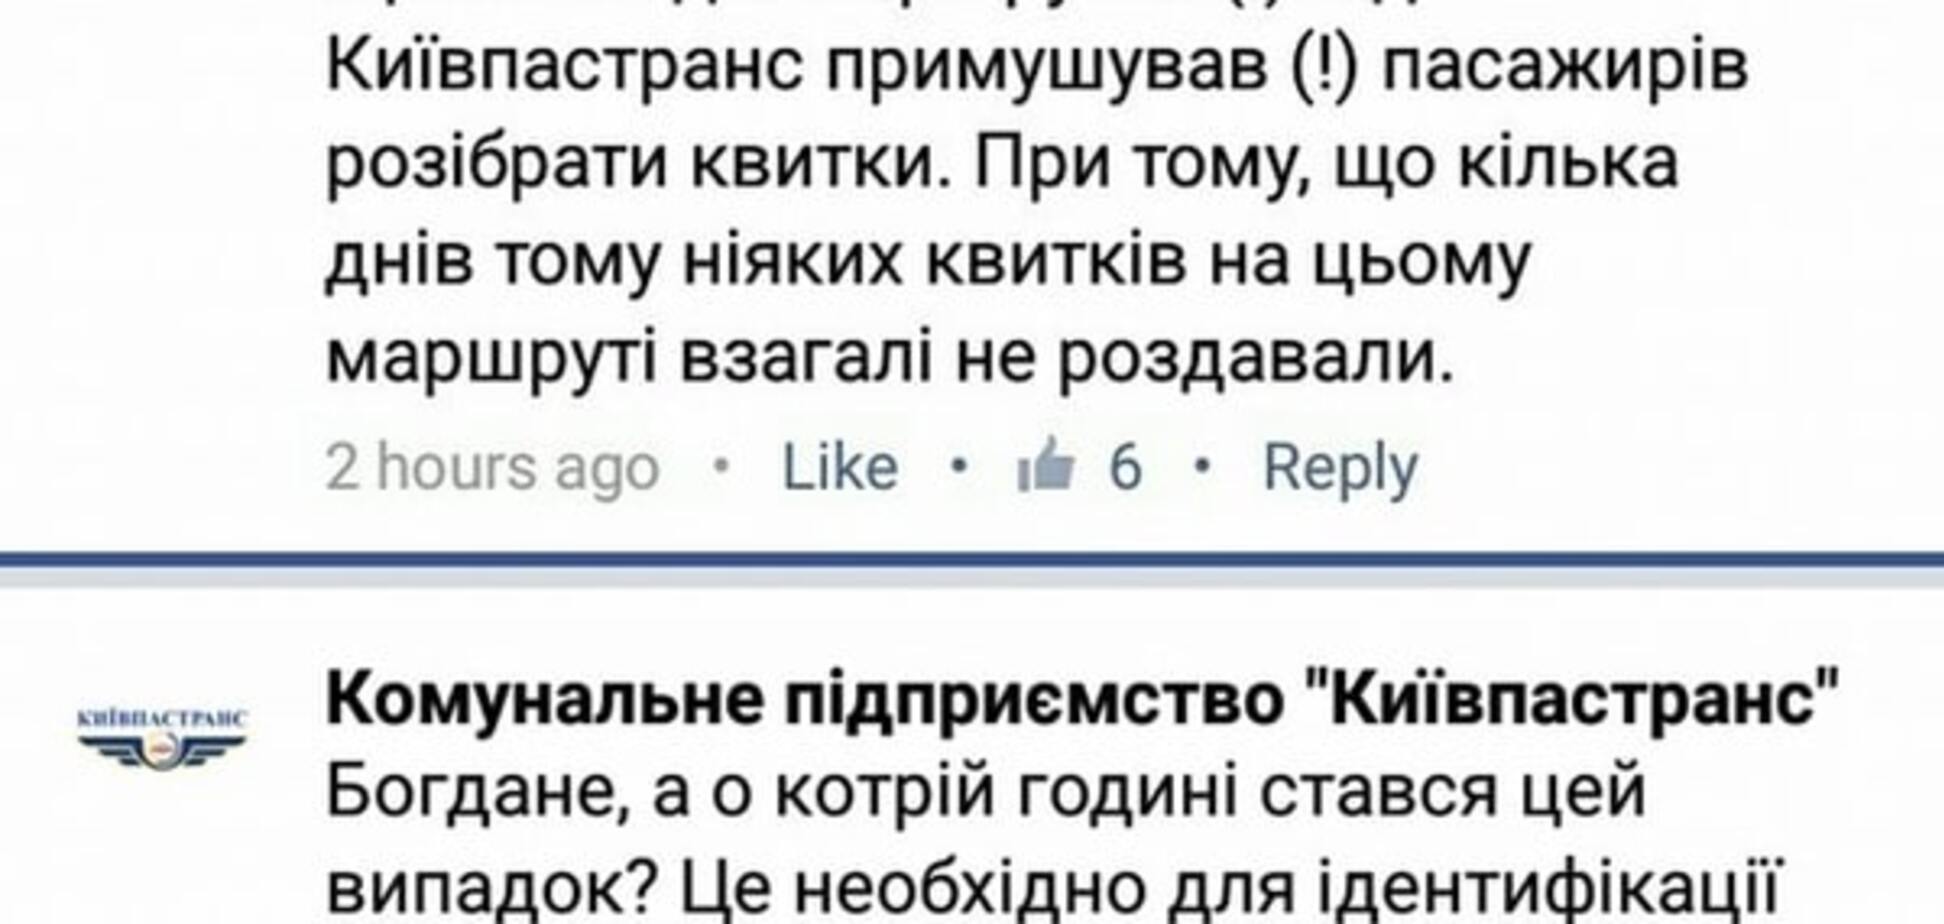 Сила соцмережі: у Києві після скарги в Facebook почали роздавати квитки пасажирам